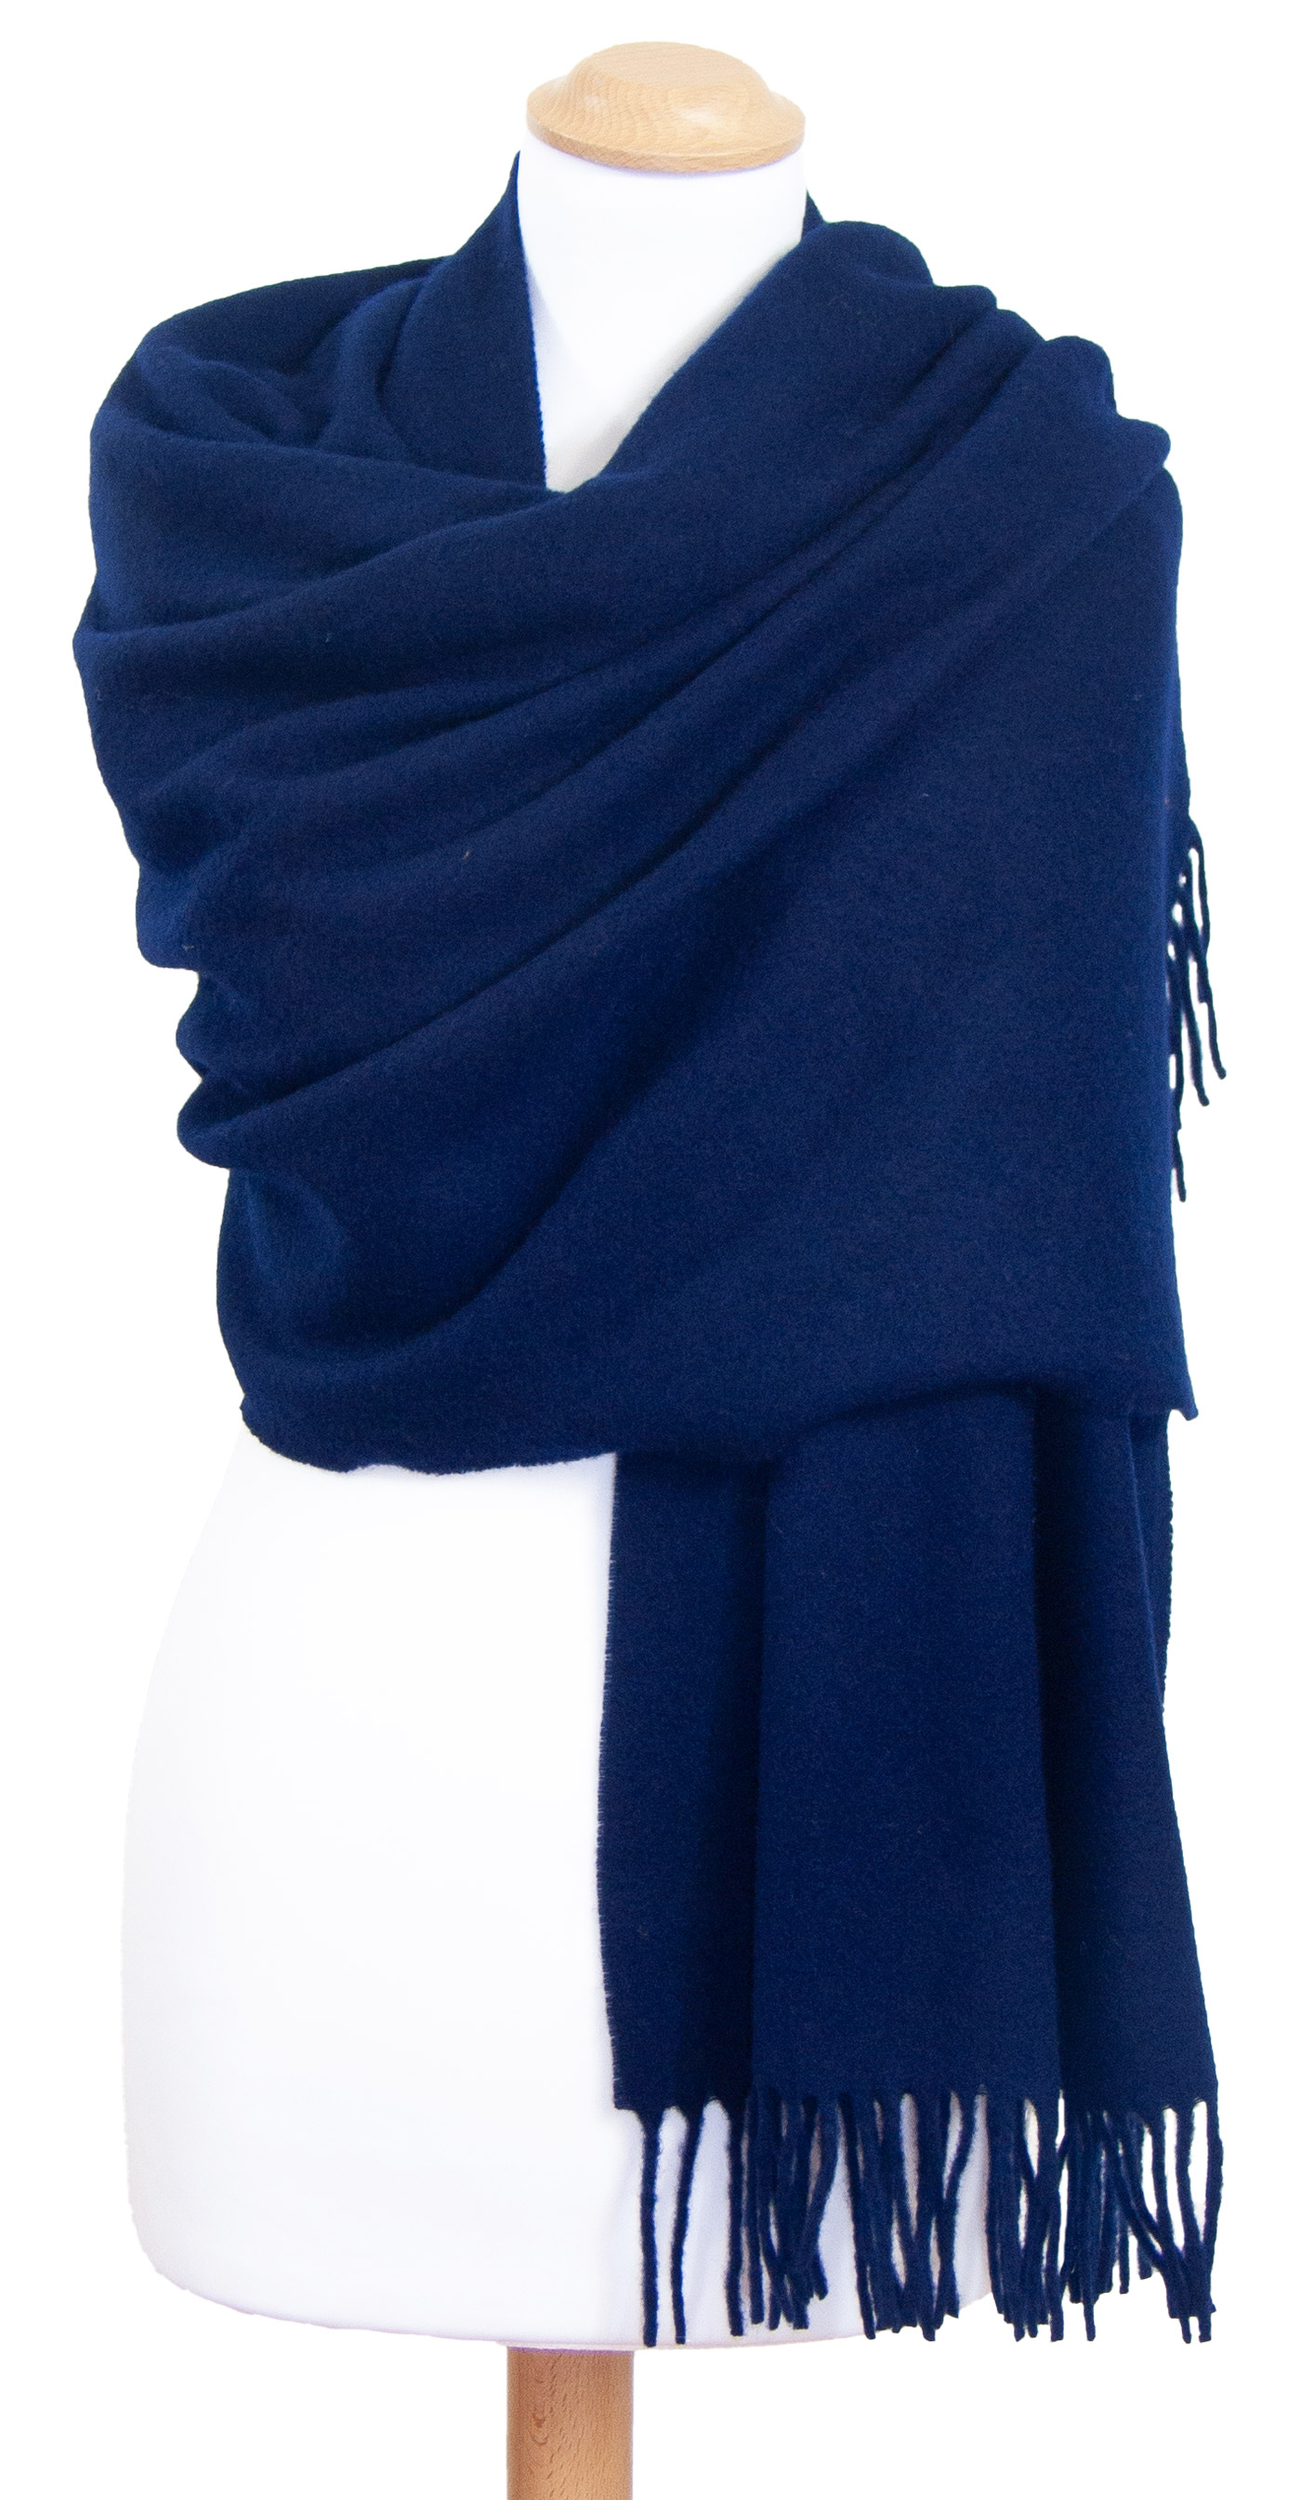 étole bleu navy laine pour femme fabriquée en France